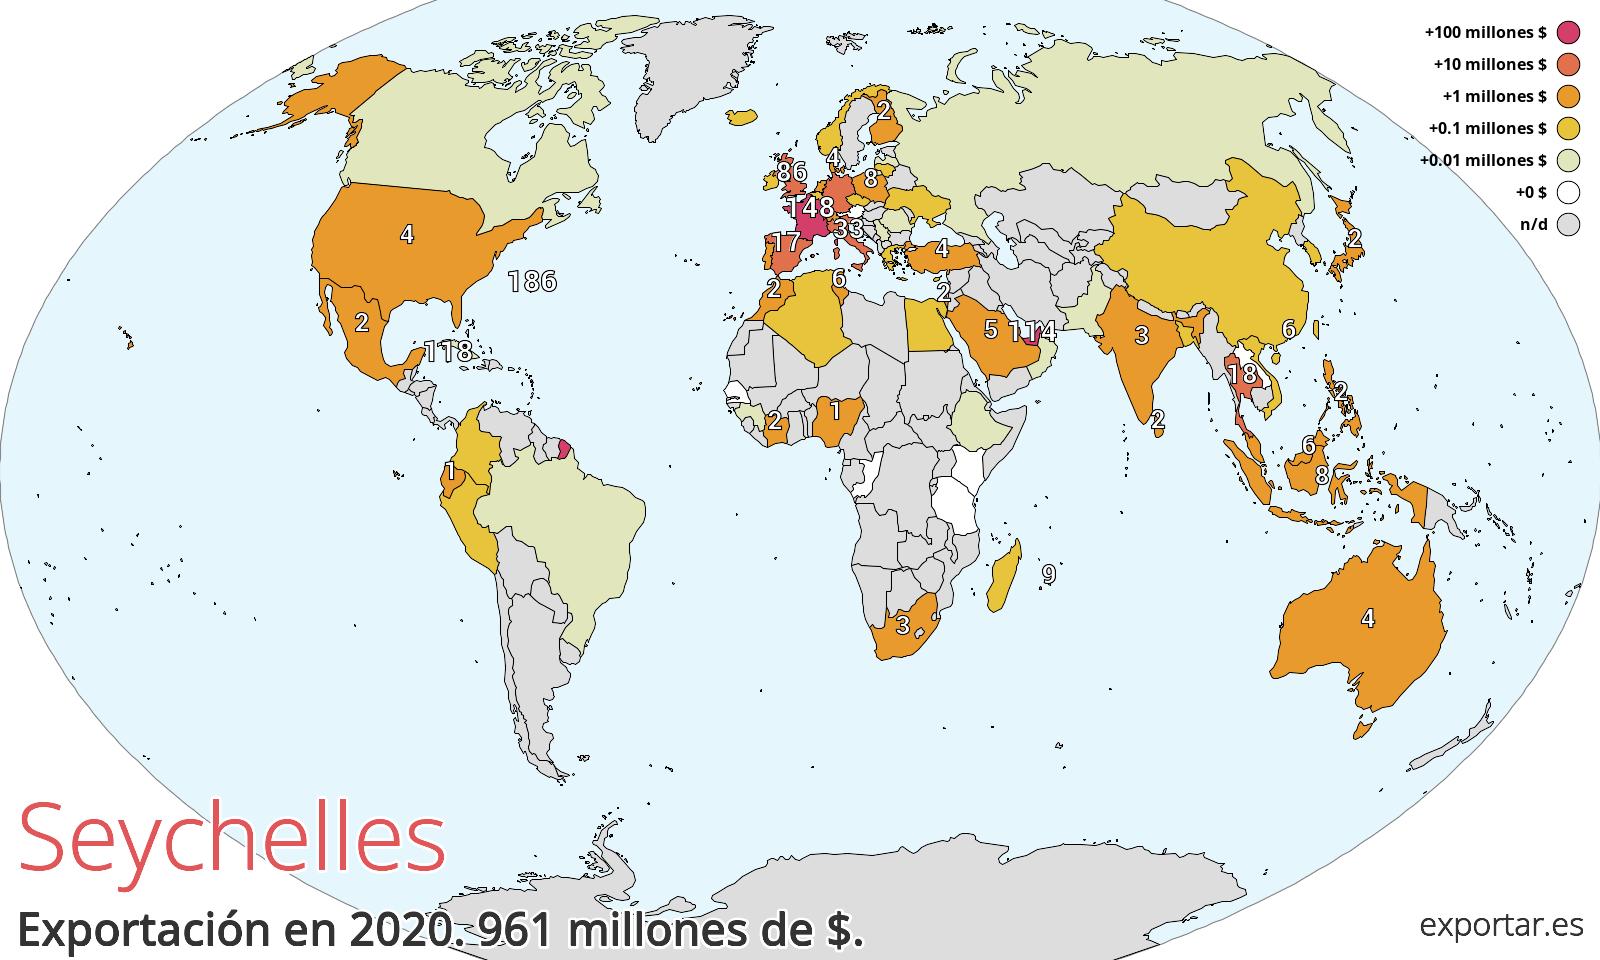 Mapa de exportación de Seychelles en 2020.